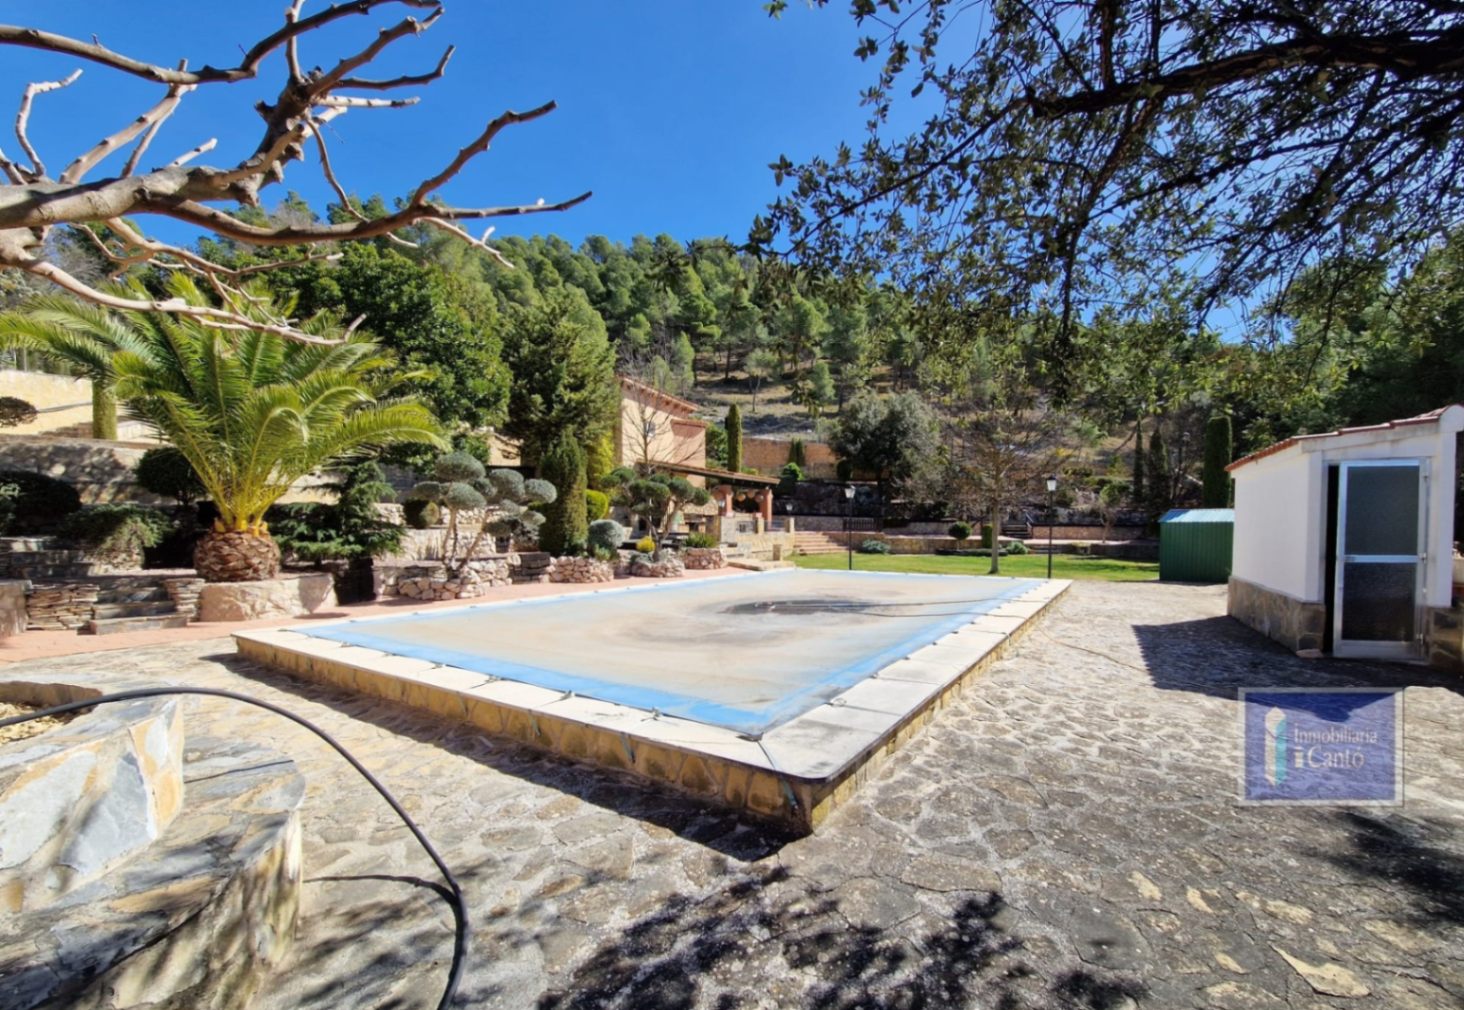 Villa for sale in the Baradello area